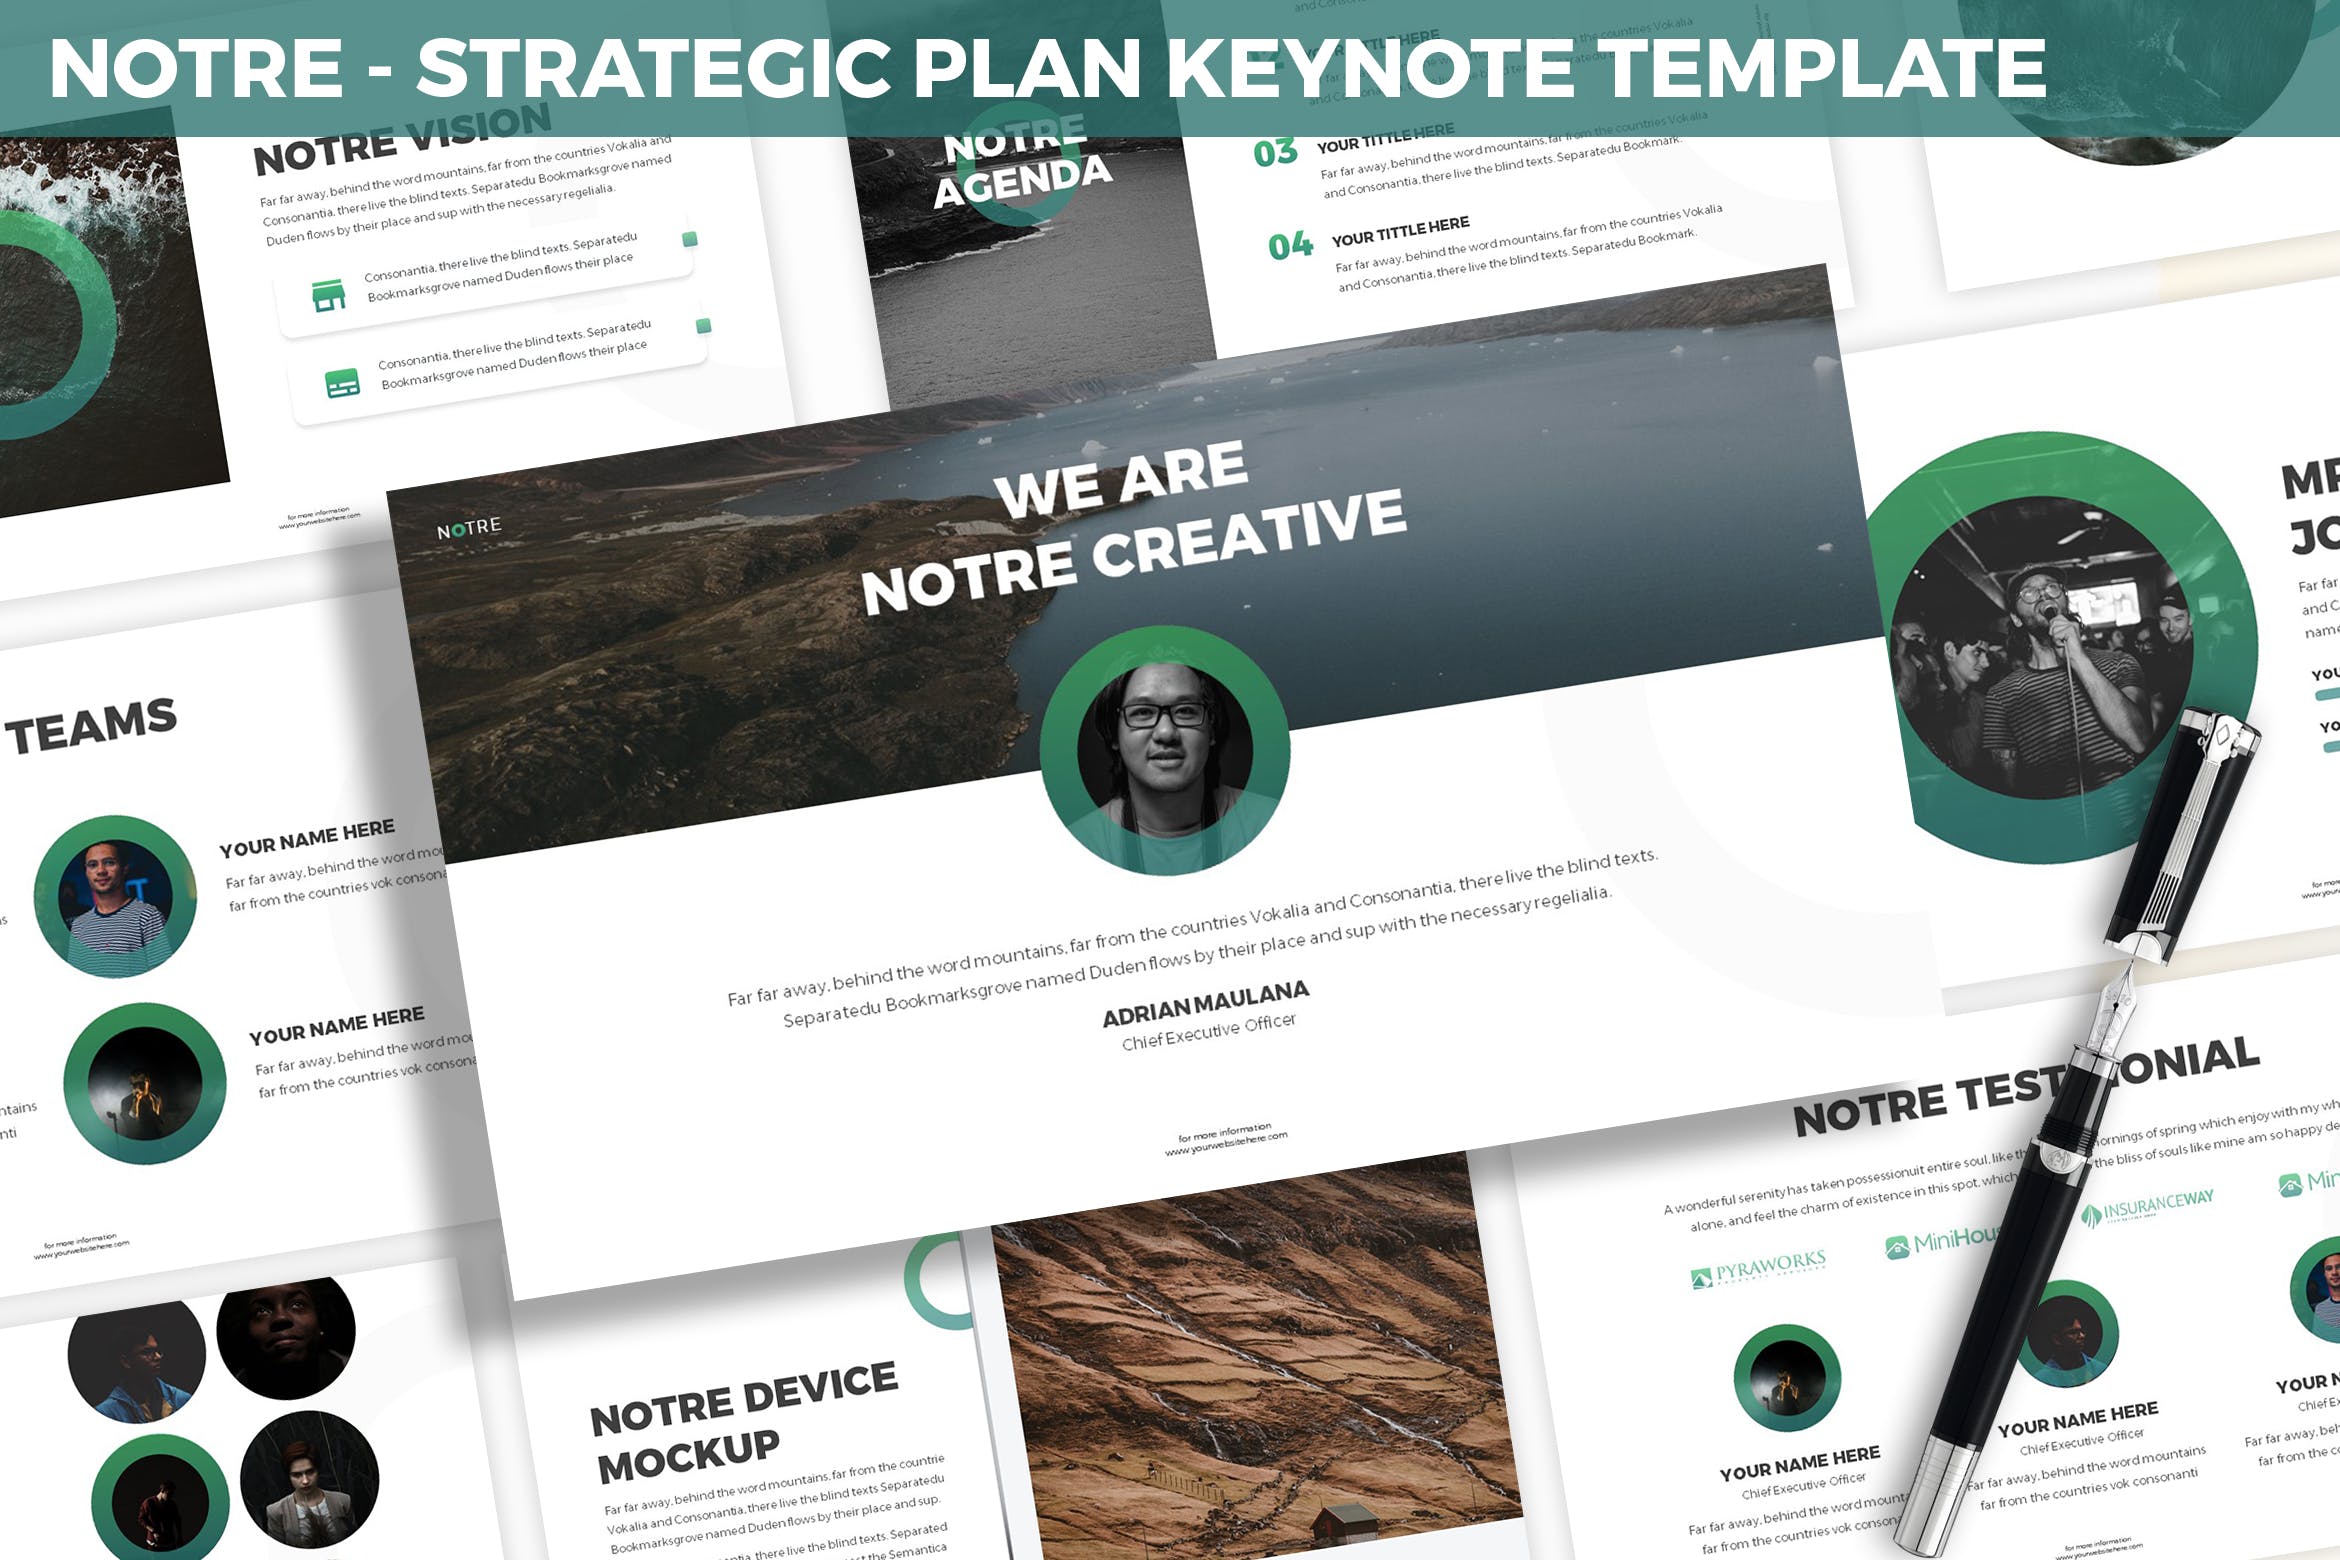 市场规划/项目计划主题亿图网易图库精选Keynote模板模板 Notre – Strategic Plan Keynote Template插图